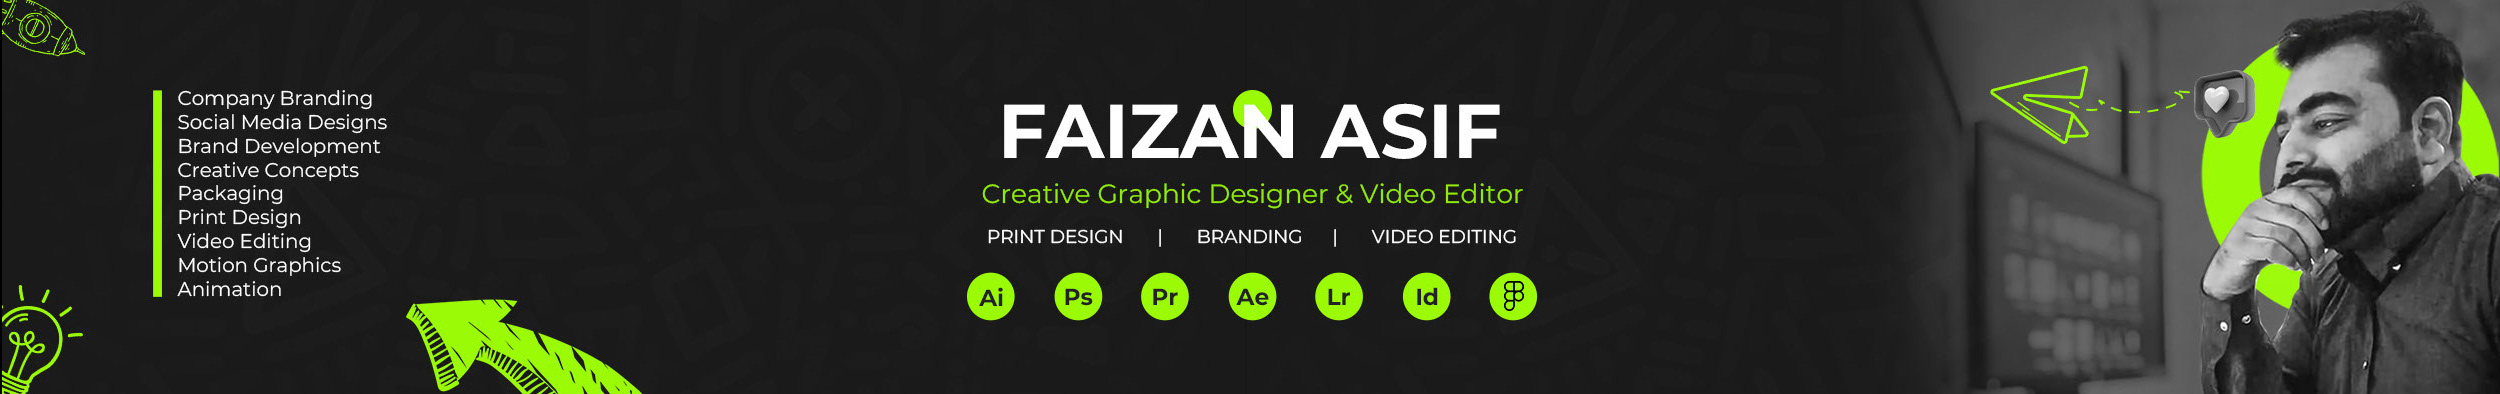 Faizan Asif's profile banner